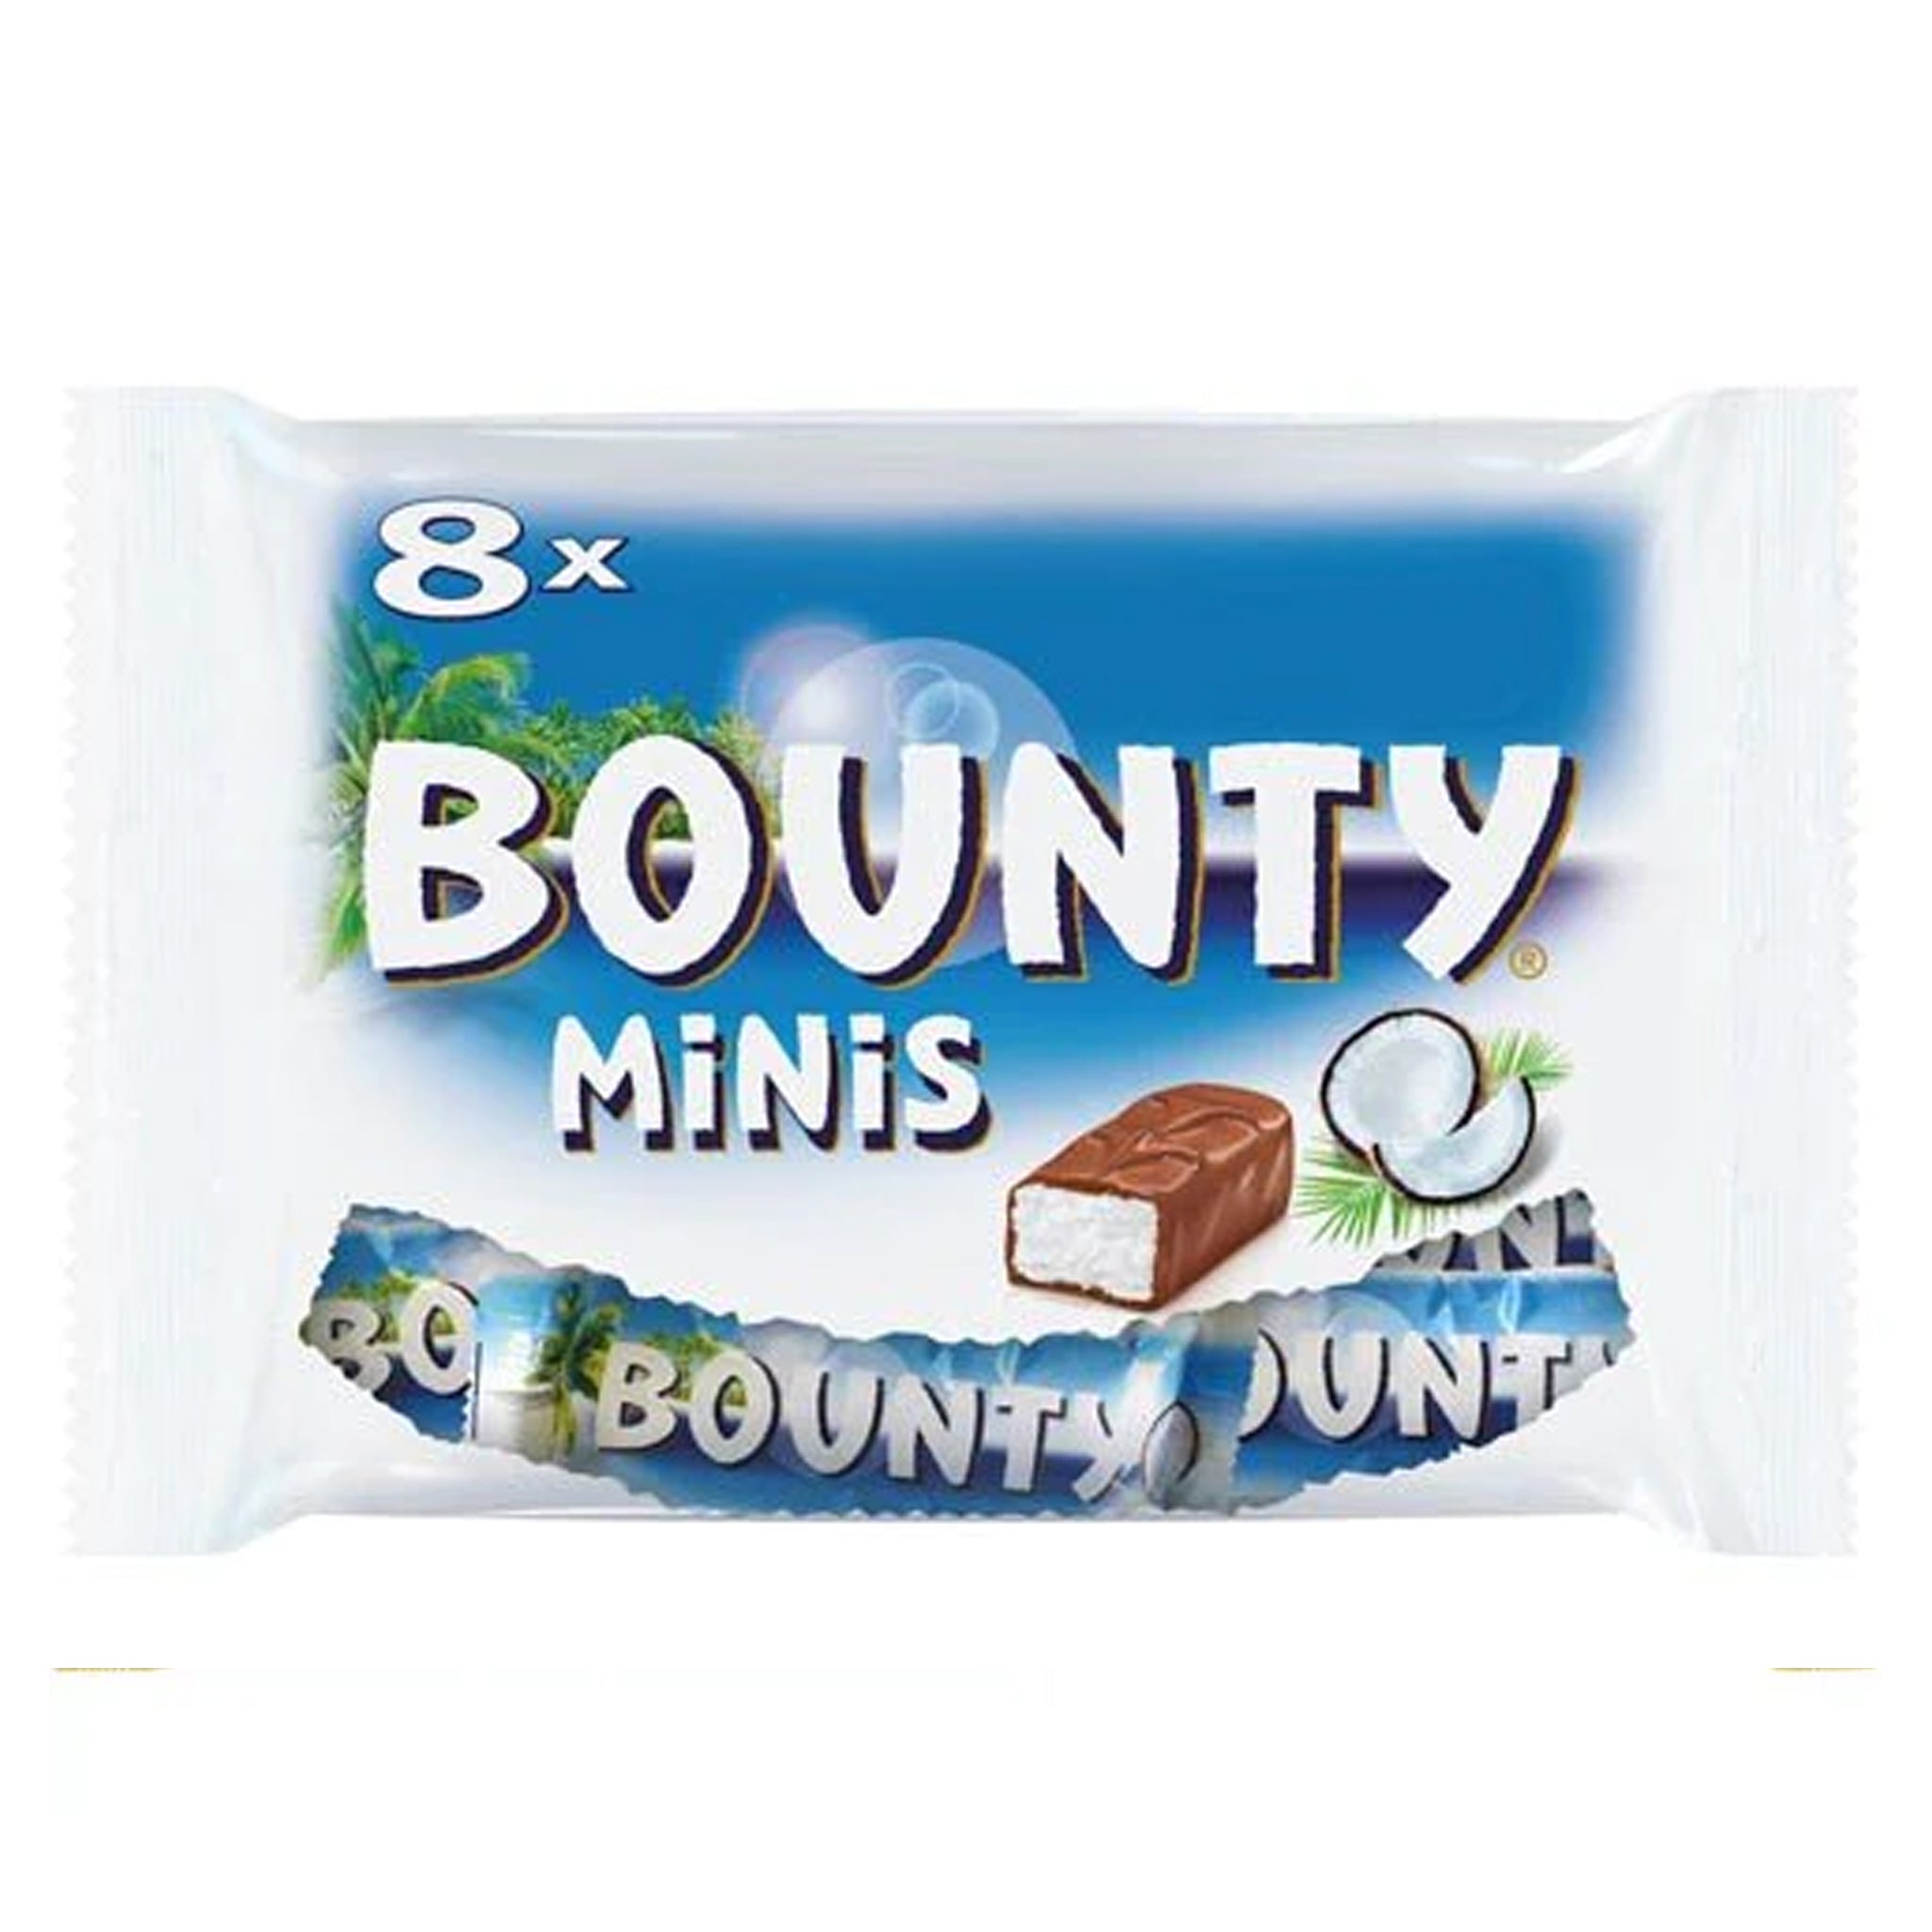 Bounty Minis באונטי מיני תשיעיה